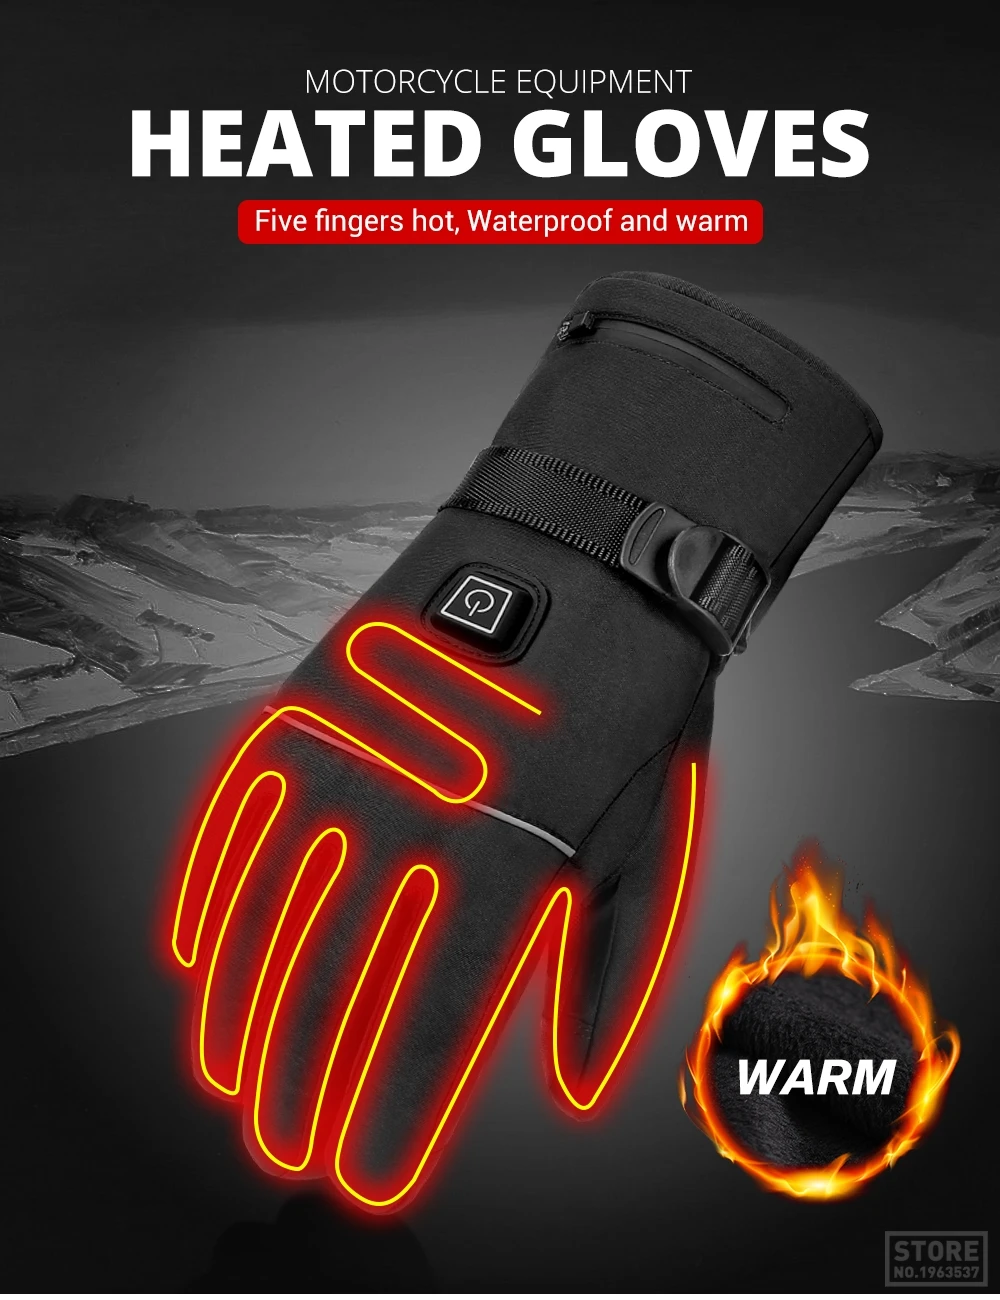 

Грелка для рук с регулировкой температуры и 3 скоростями, USB, зарядка, нагрев пальцев, нагрев, безопасность, постоянная температура, теплые пе...